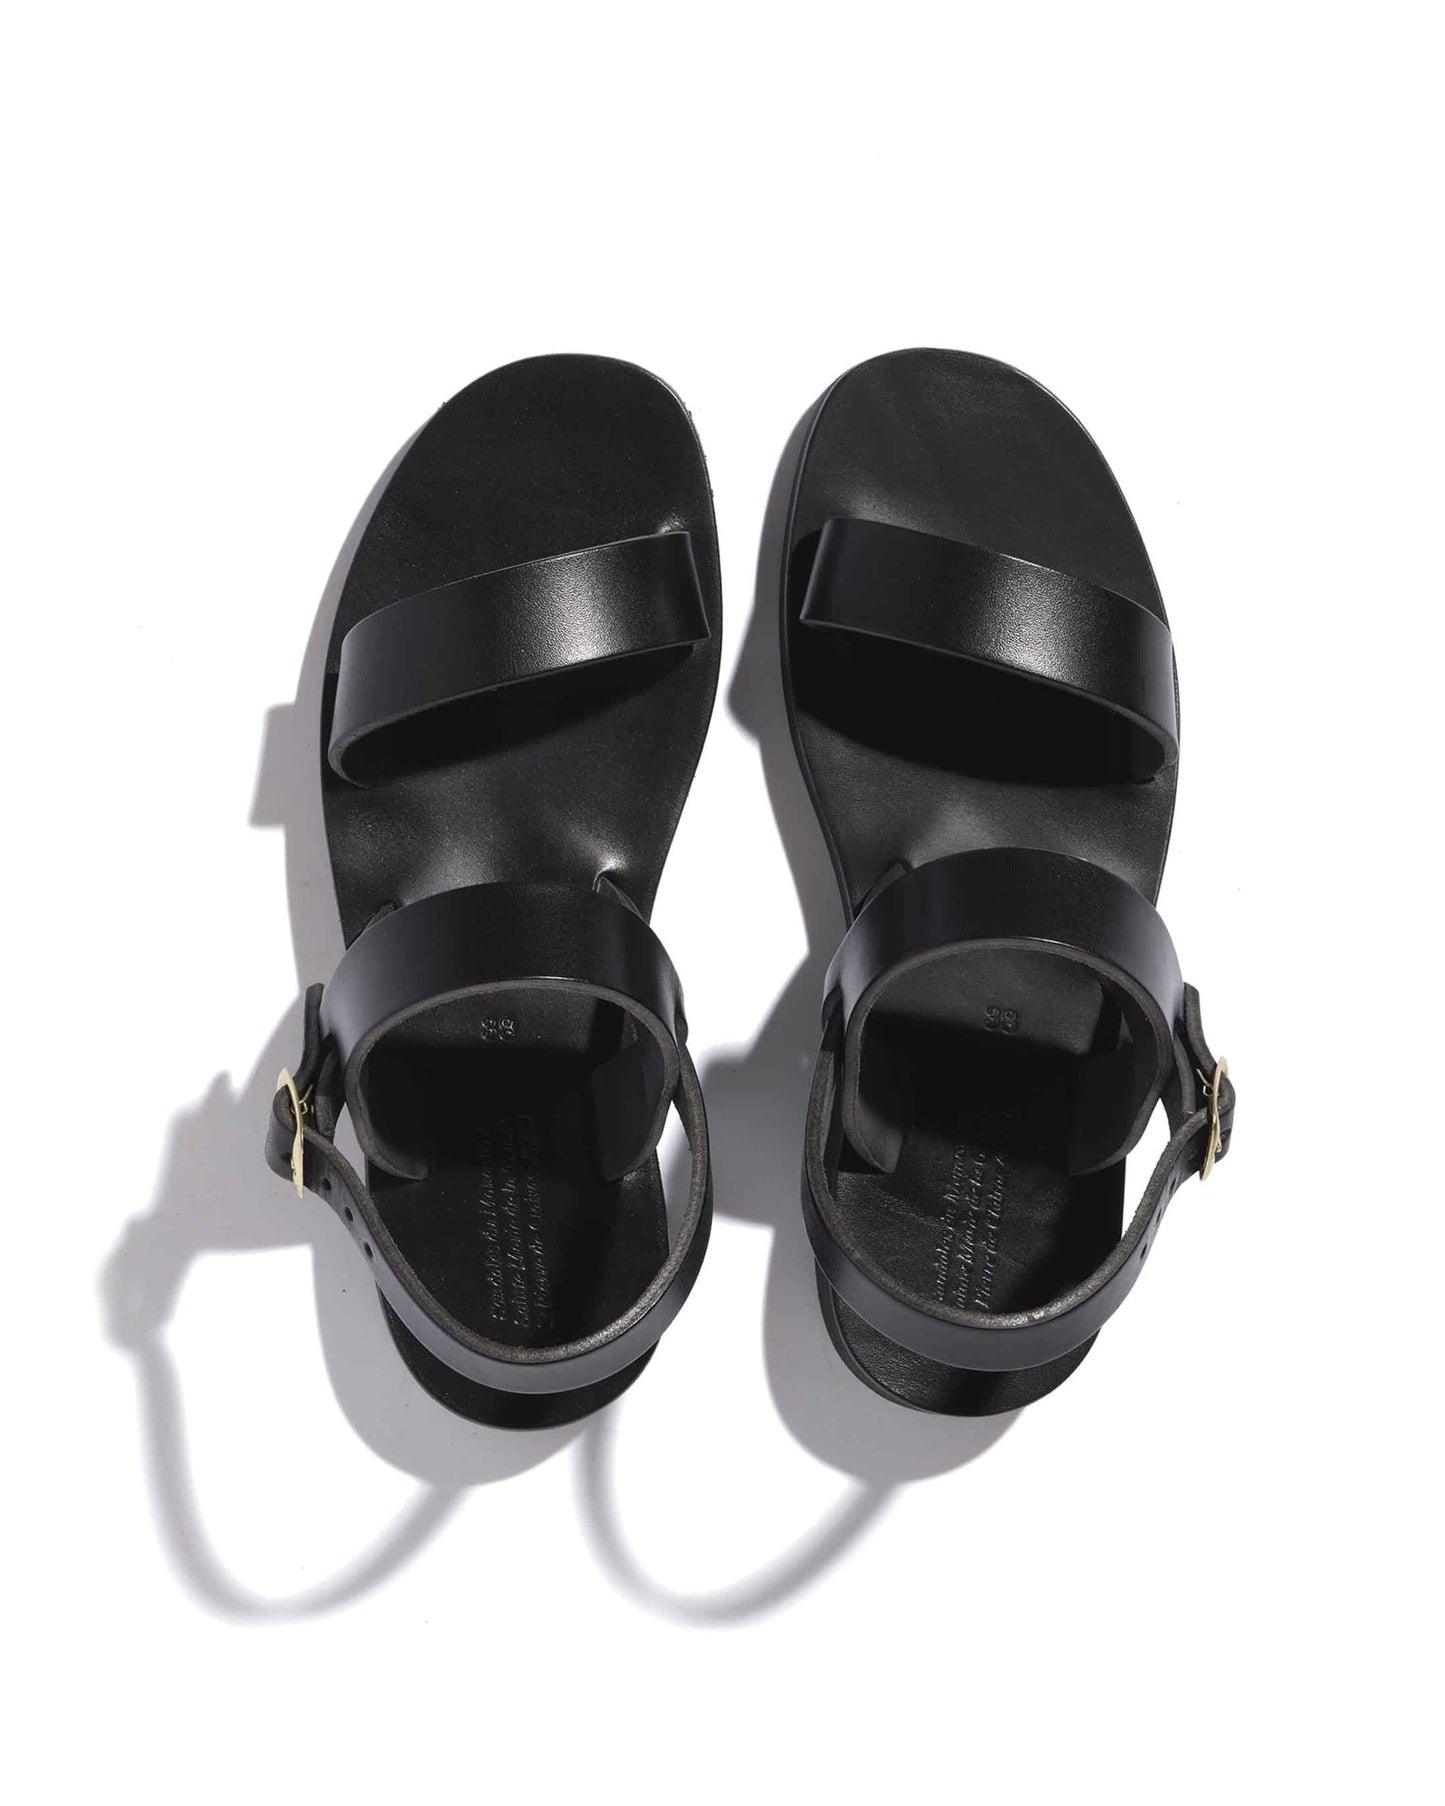 Black women's monastic sandals